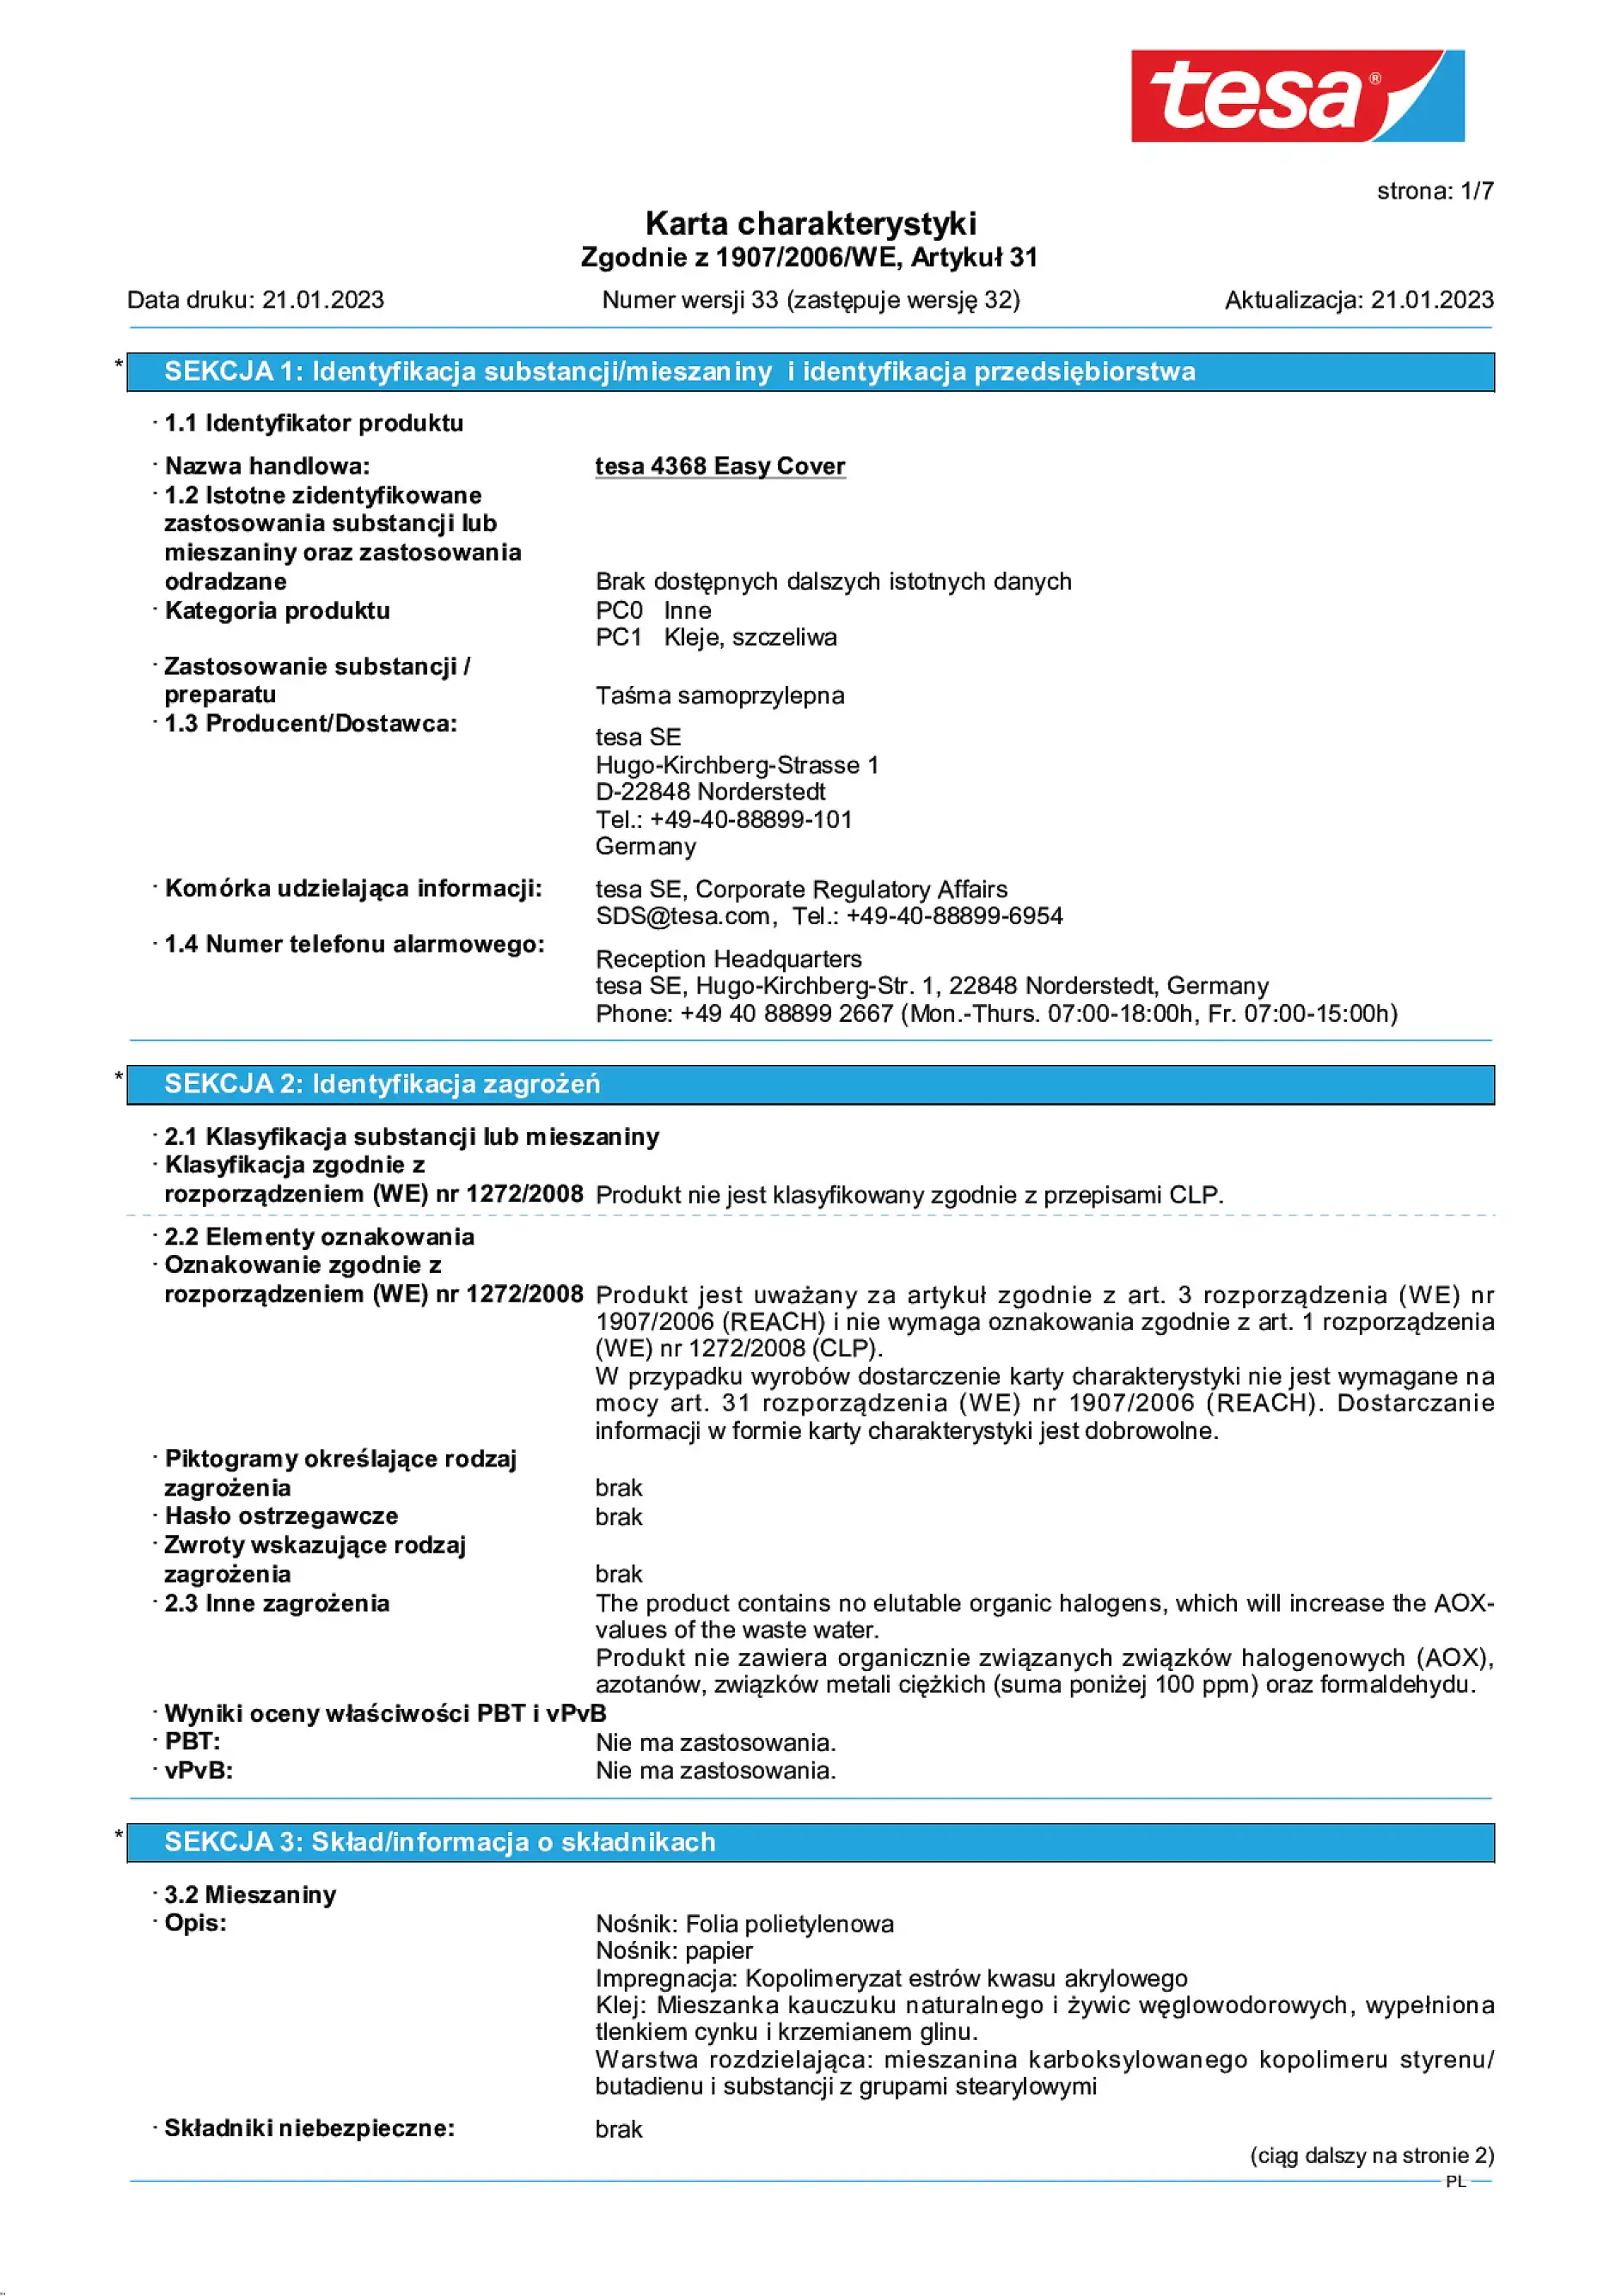 Safety data sheet_tesa® Professional 04368_pl-PL_v33